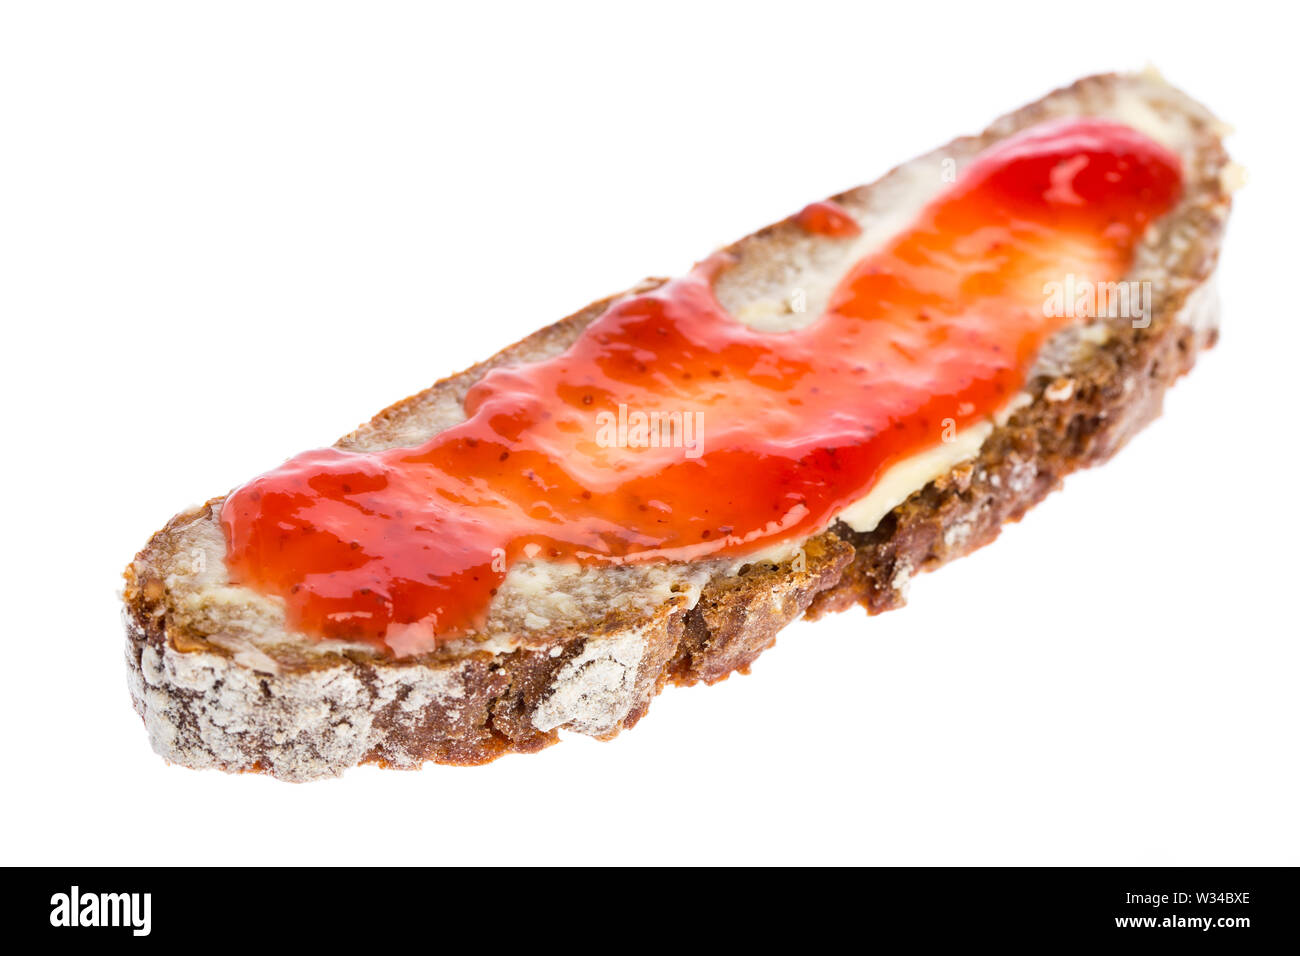 Ein strawberry jam Sandwich auf weißem Hintergrund Stockfoto